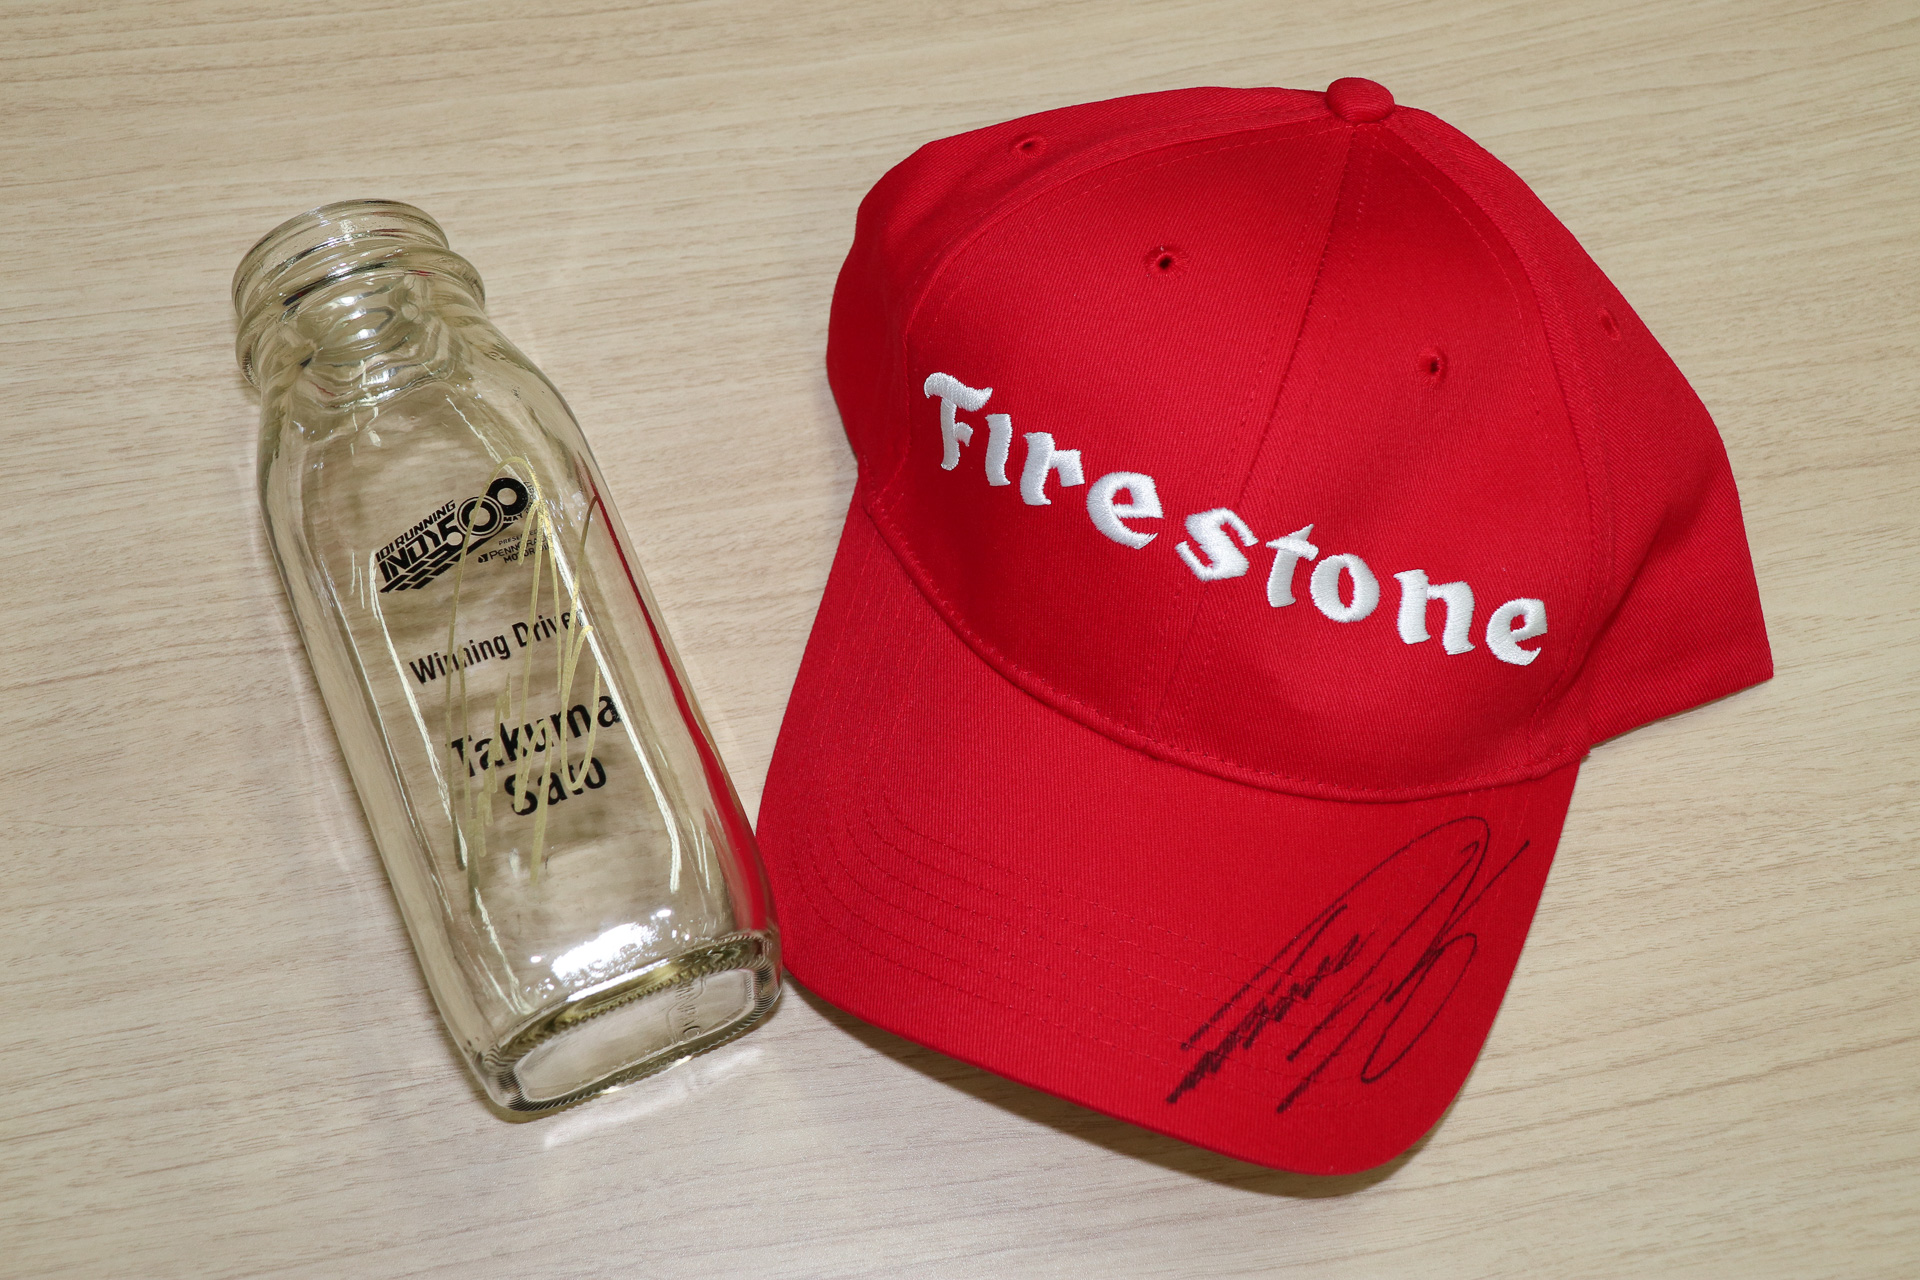 インディ500ウィナー佐藤琢磨選手の直筆サイン入りグッズをプレゼント インディ500で購入した Takuma Sato牛乳瓶 と ブリヂストンからいただいた ファイアストンキャップ 3名様に 12月7日18時締め切り